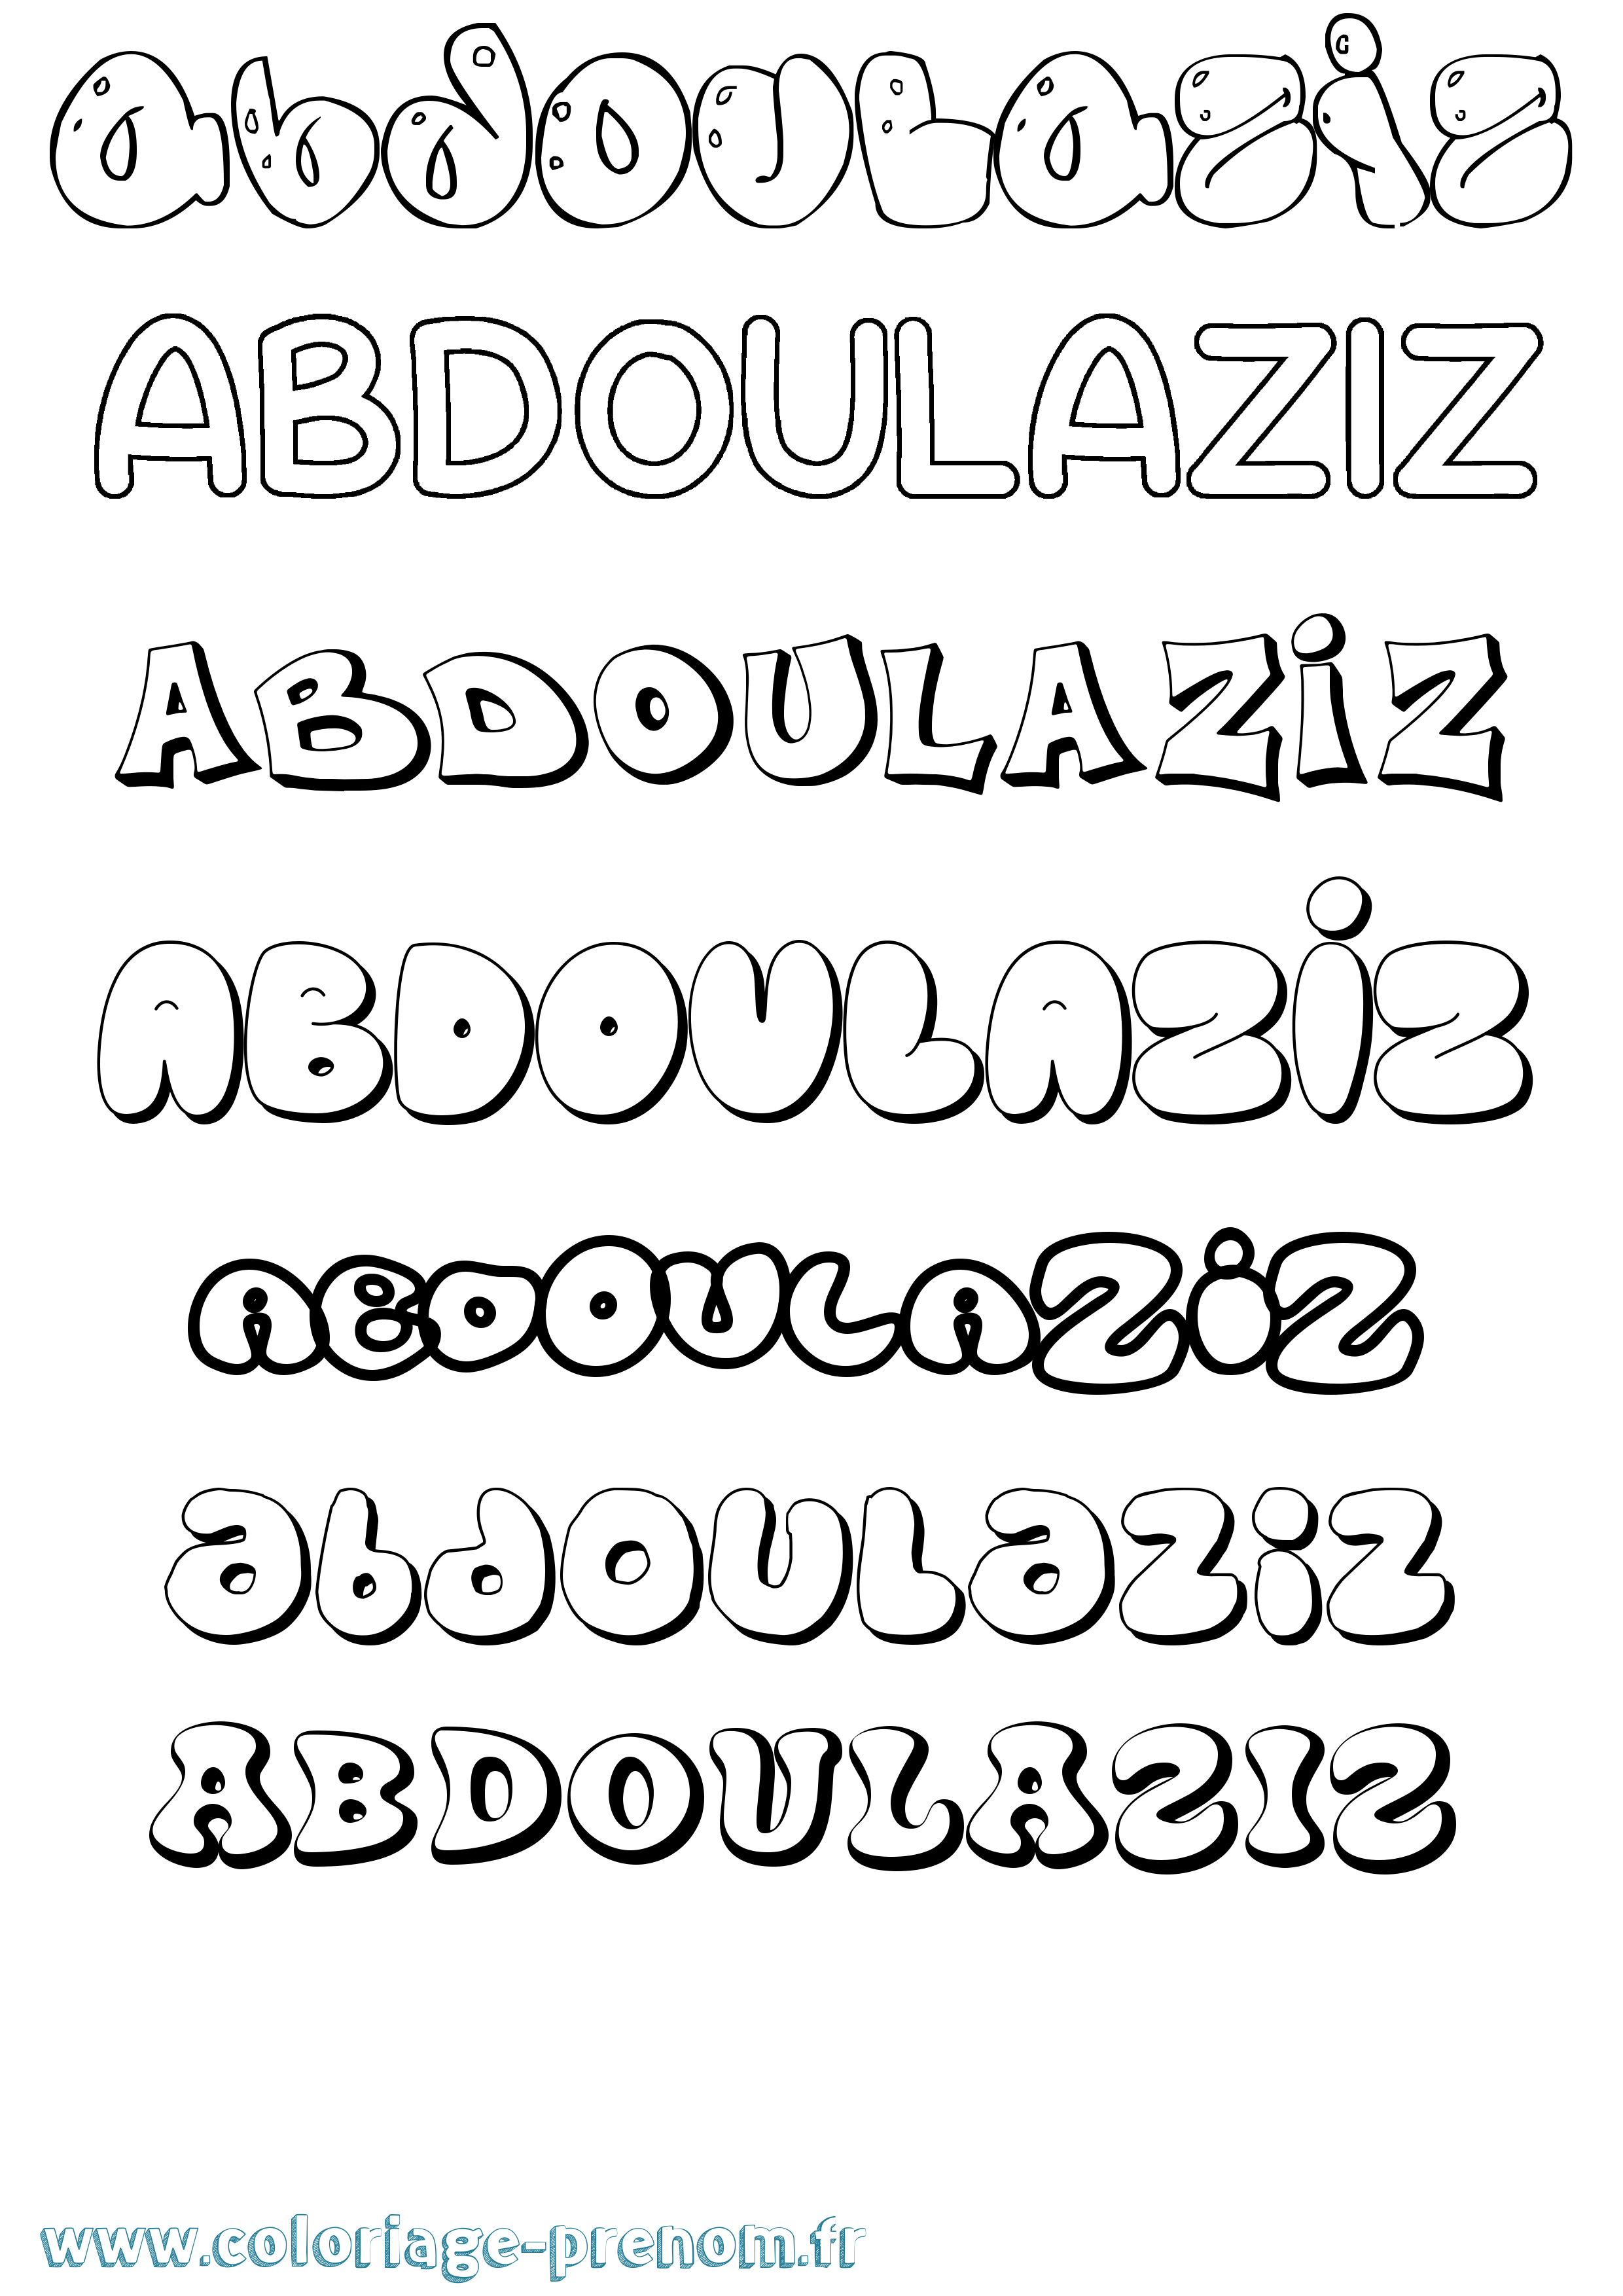 Coloriage prénom Abdoulaziz Bubble